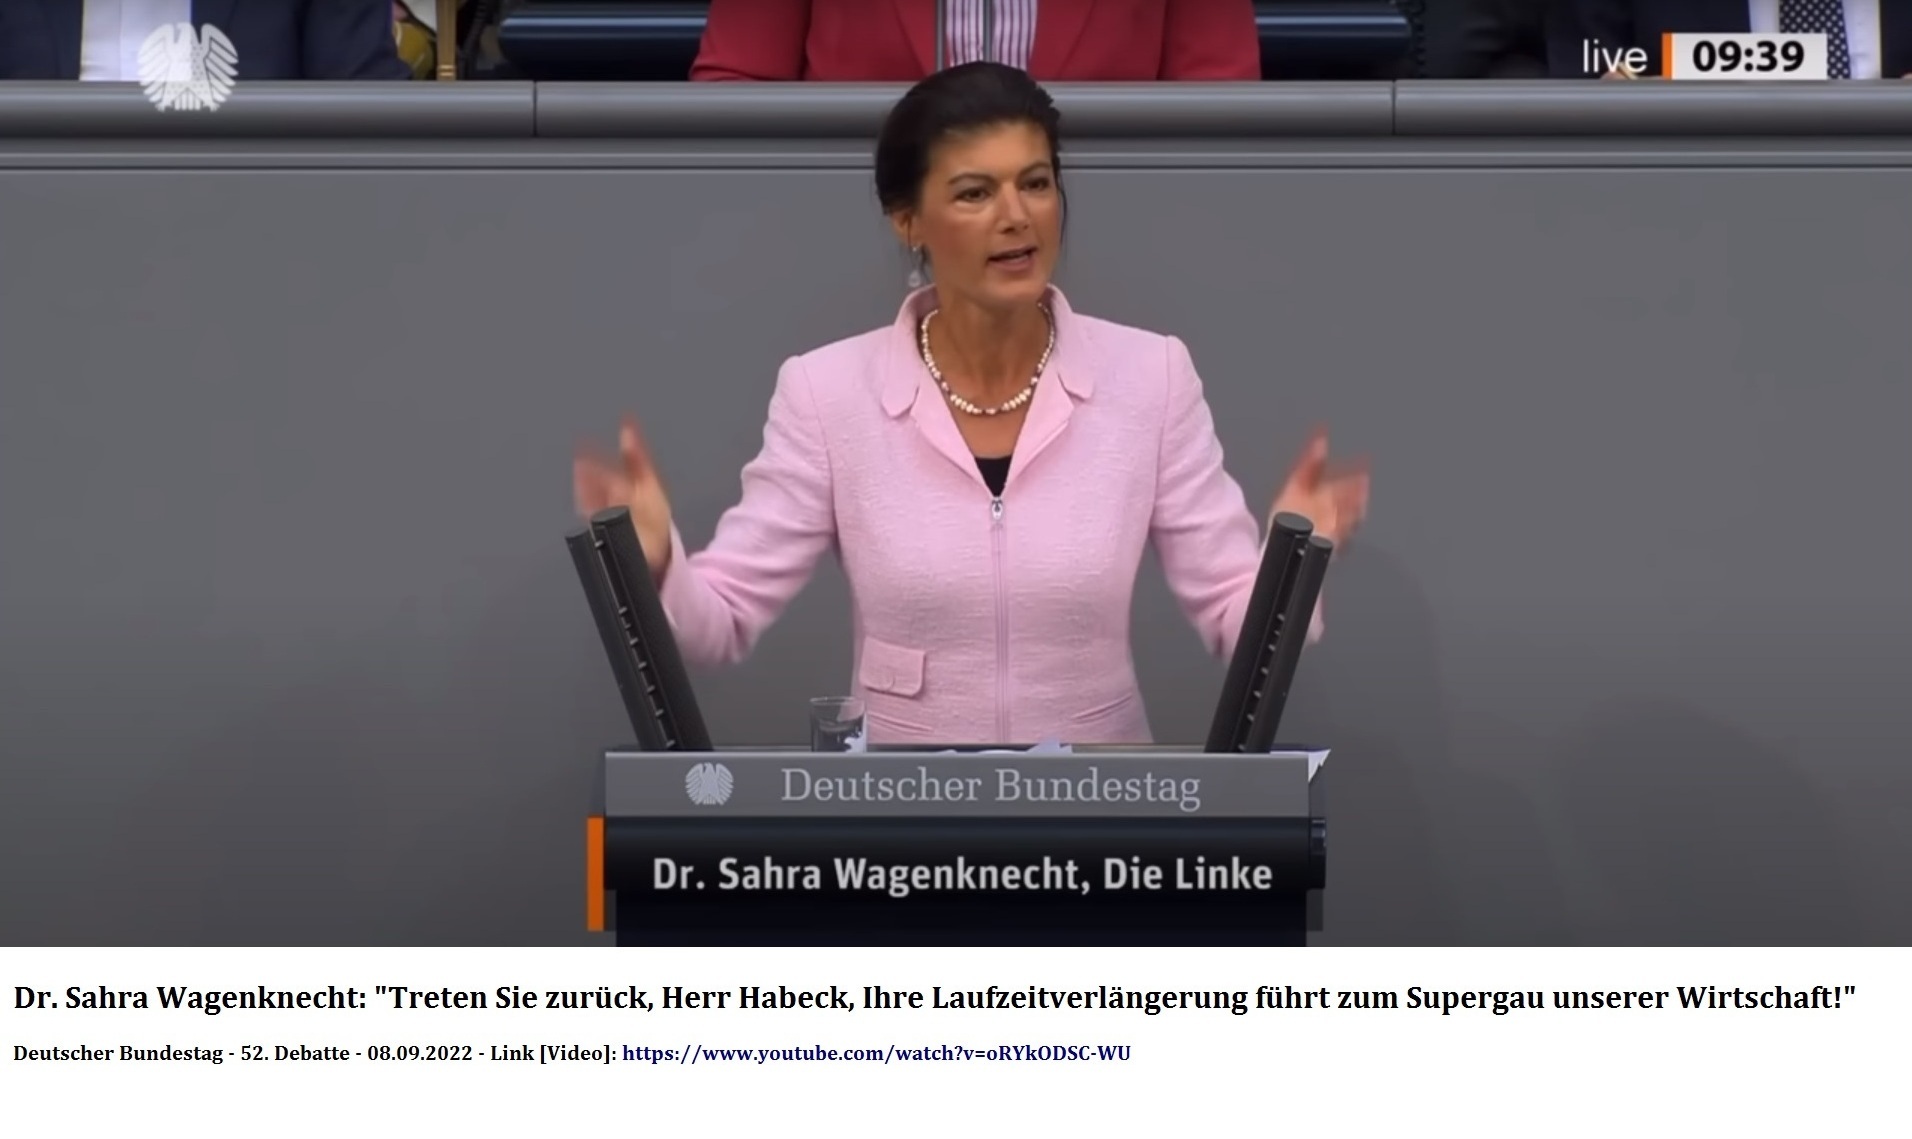 Aus dem Posteingang von Dr. Marianne Linke vom 10.09.2022 - Dr. Sahra Wagenknecht (MdB), Die Linke: 'Treten Sie zurück, Herr Habeck, Ihre Laufzeitverlängerung führt zum Supergau unserer Wirtschaft!' - Deutscher Bundestag - 52. Bundestagsdebatte -  Debatte über den Etatentwurf des Bundesministeriums für Wirtschaft und Klimaschutz - 08.09.2022 - Link Video: https://www.youtube.com/watch?v=oRYkODSC-WU 